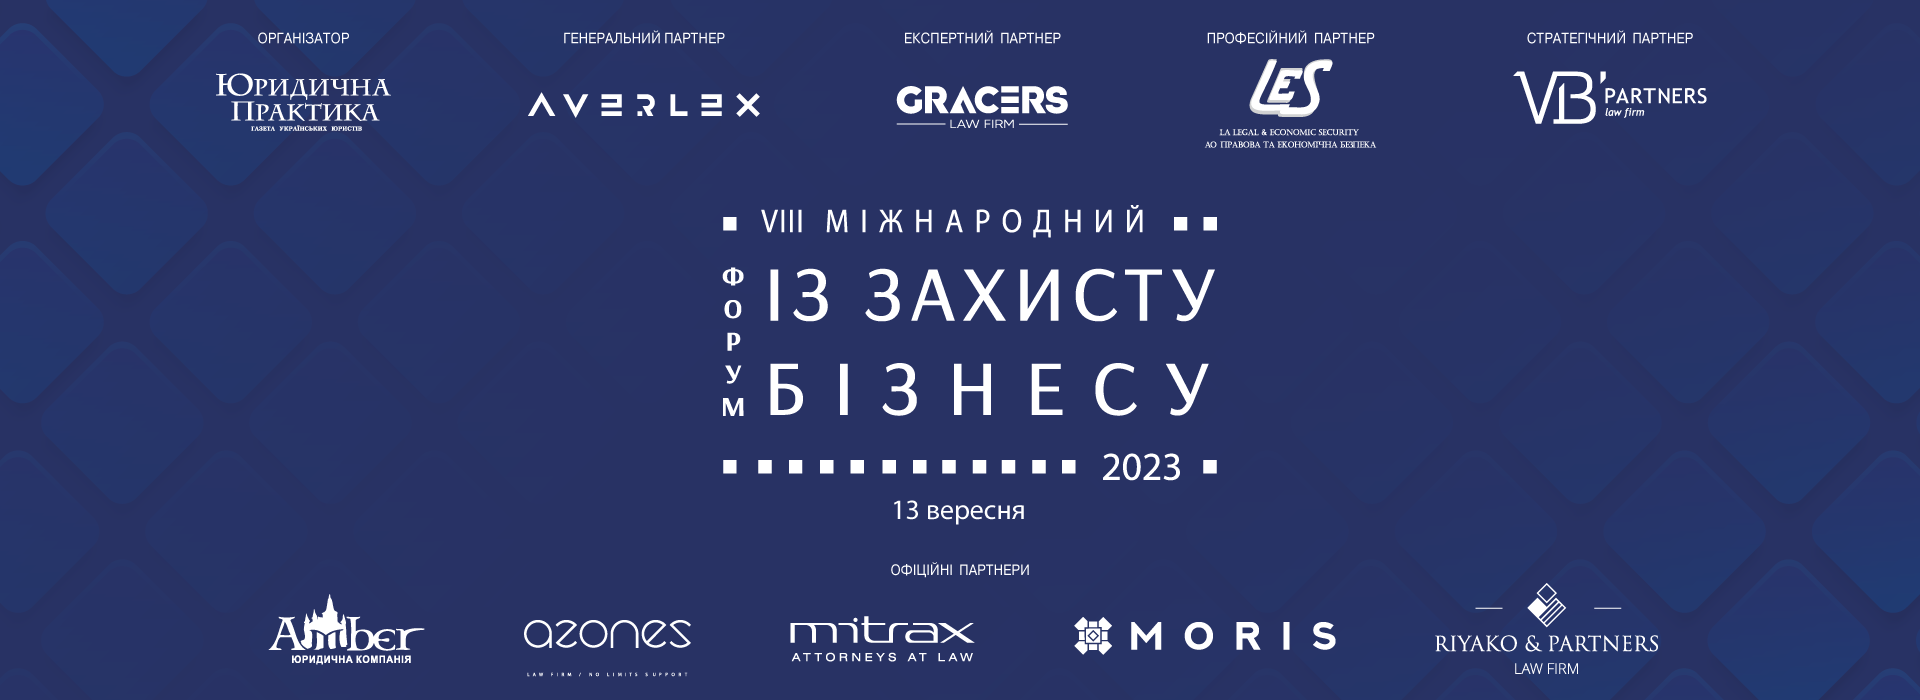 VIII Міжнародний форум із захисту бізнесу відбудеться 13 вересня 2023 року в м. Києві